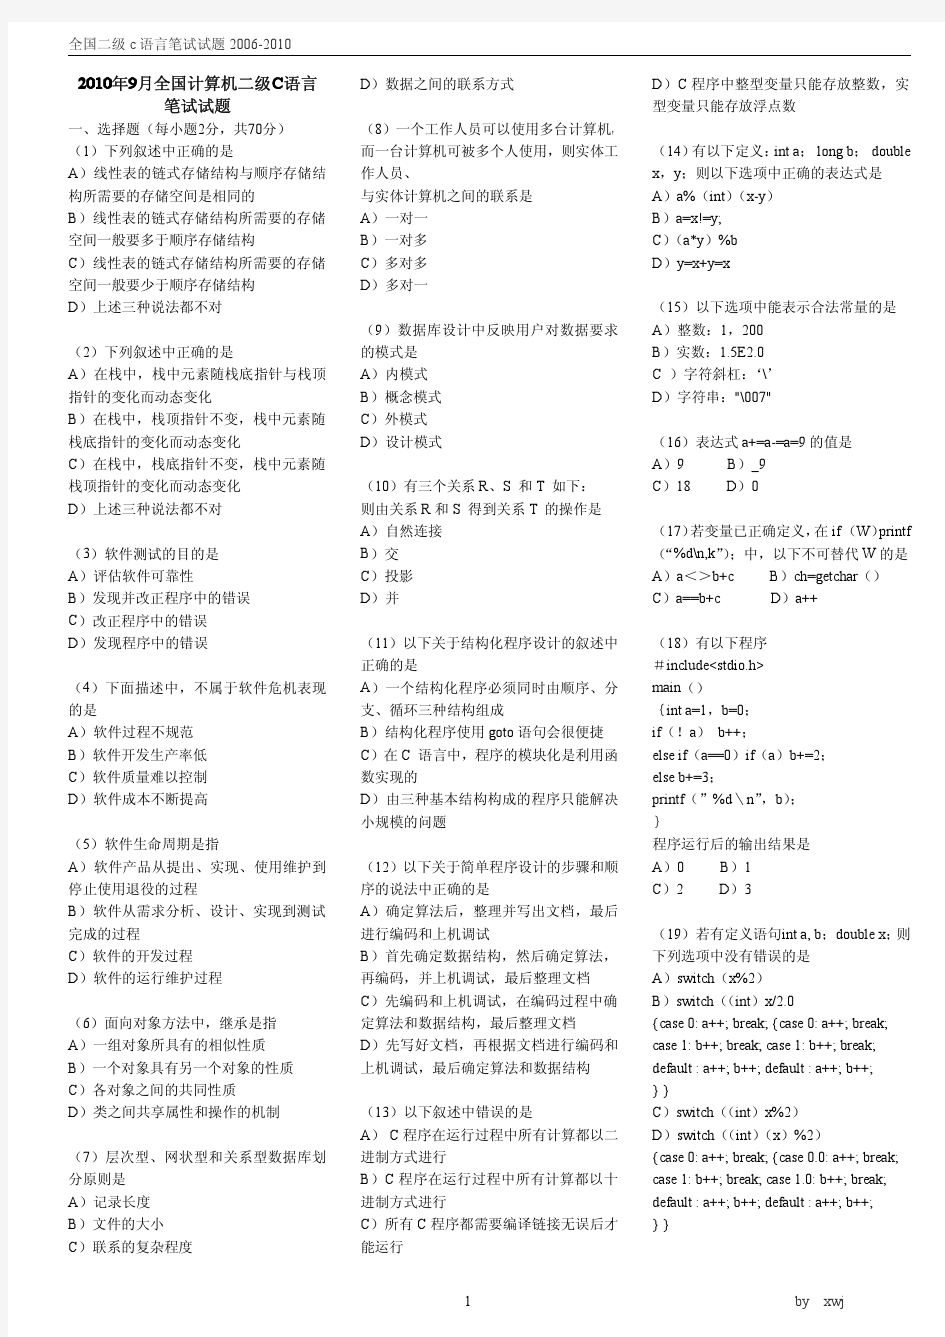 全国计算机二级C语言笔试历届真题汇编(2006年4月-2010年9月)xwj